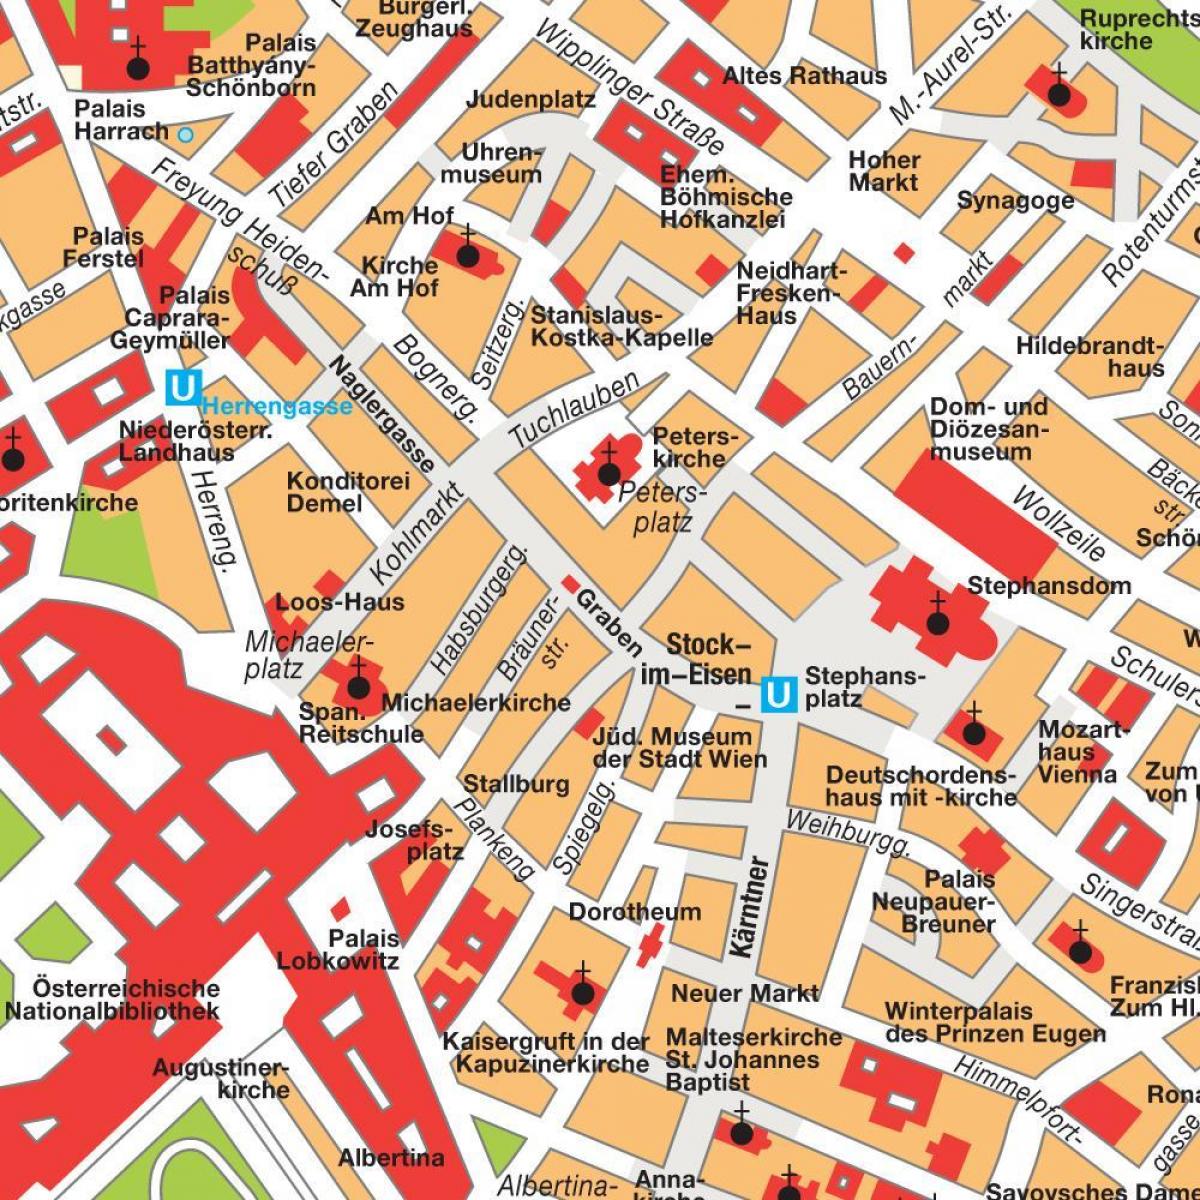 Vídeň centrum města mapa